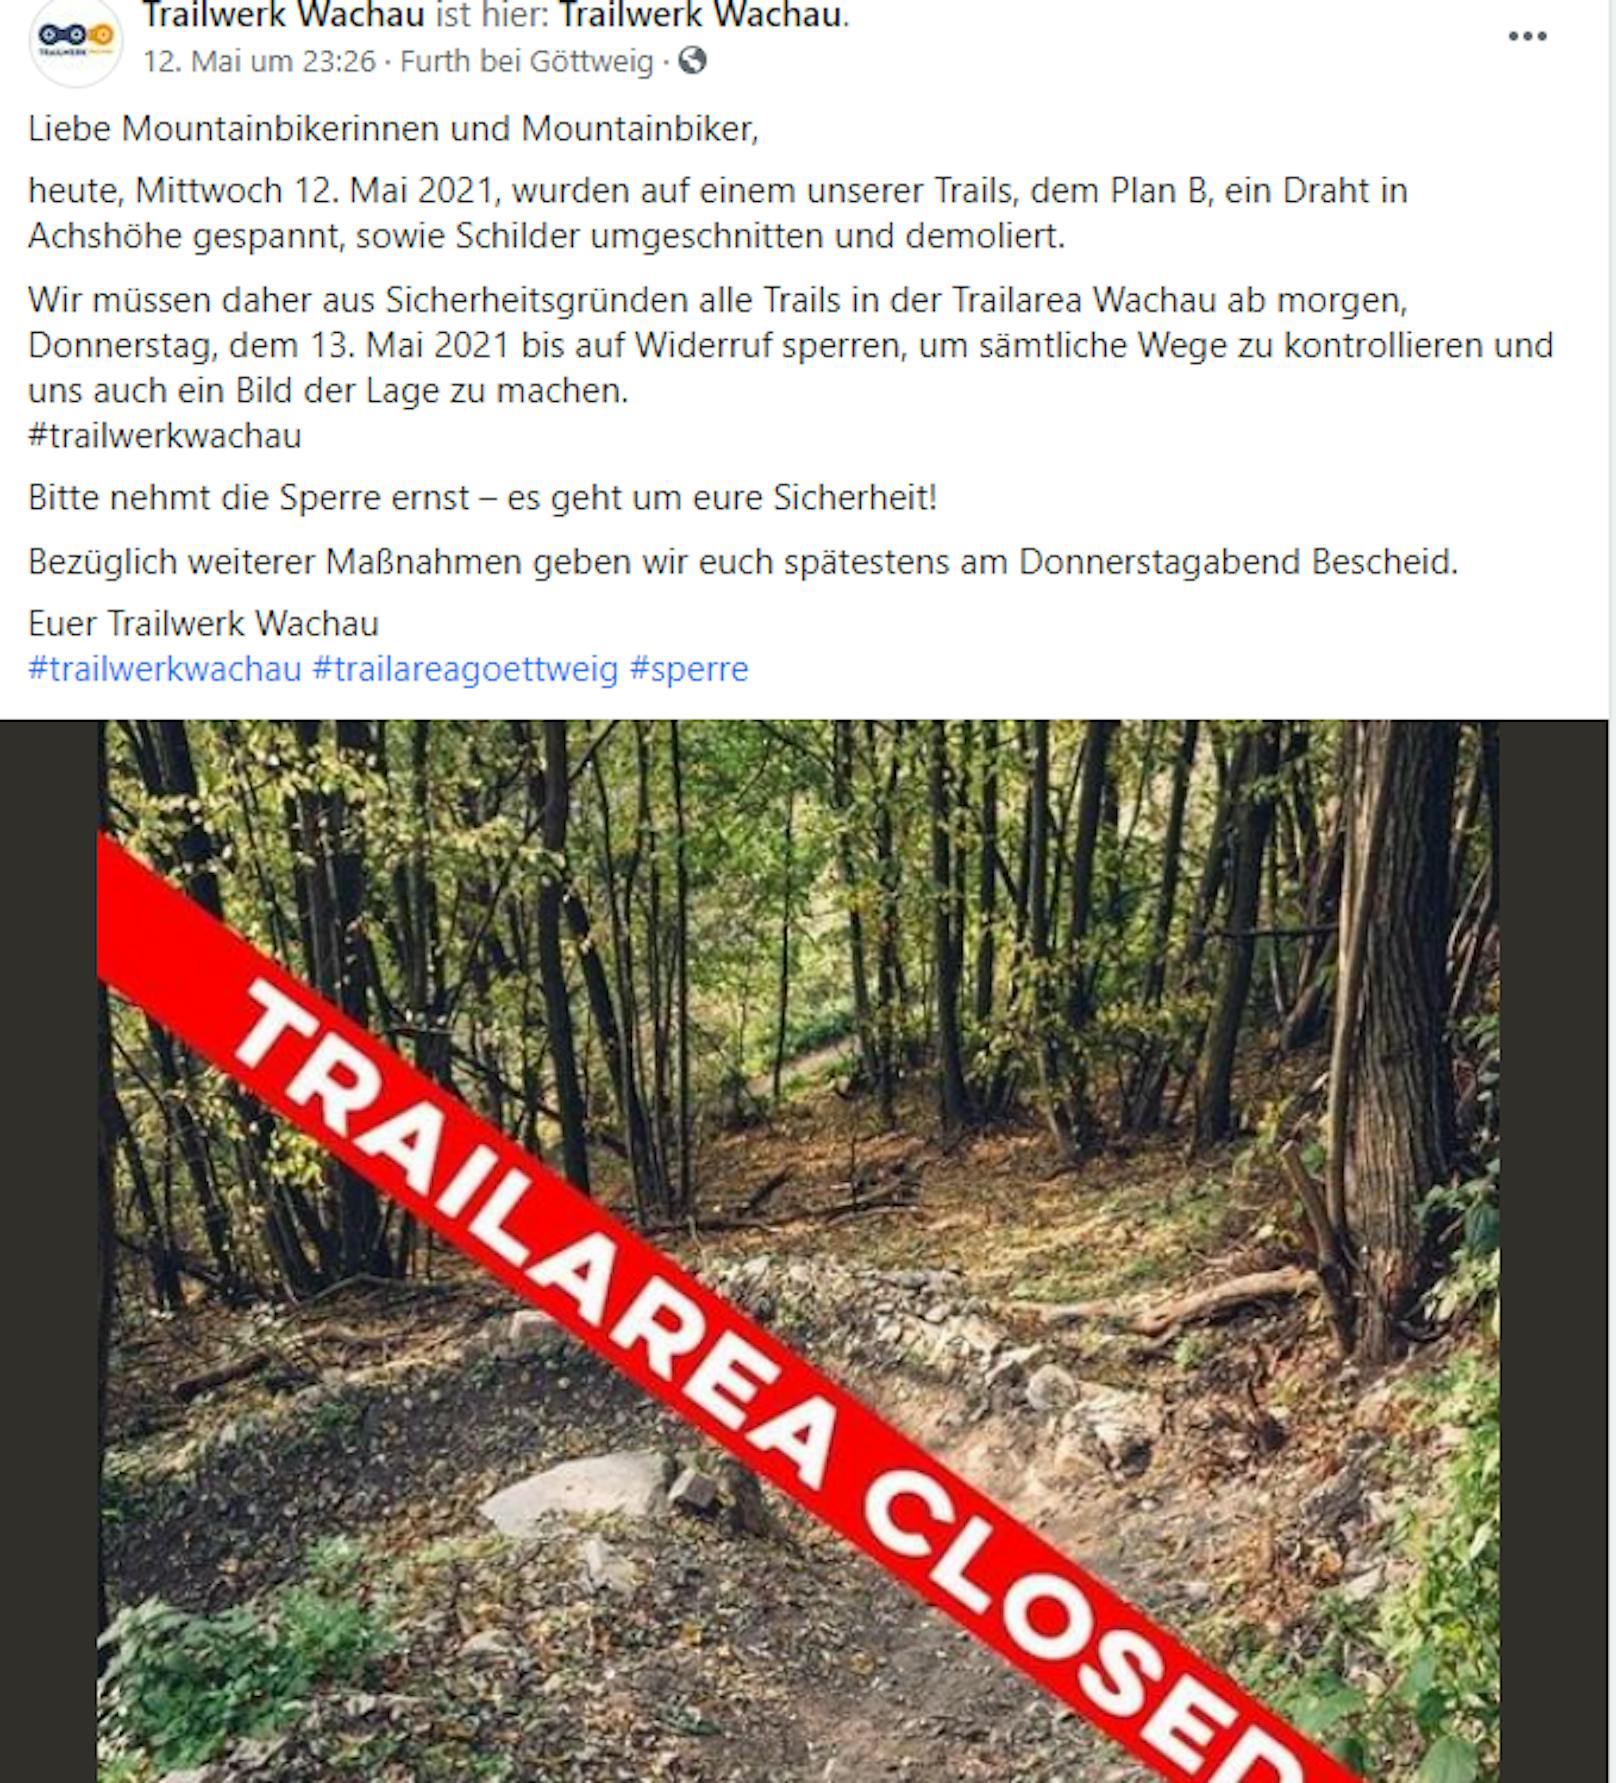 Der Verein Trailwerk Wachau mahnt zur Vorsicht.